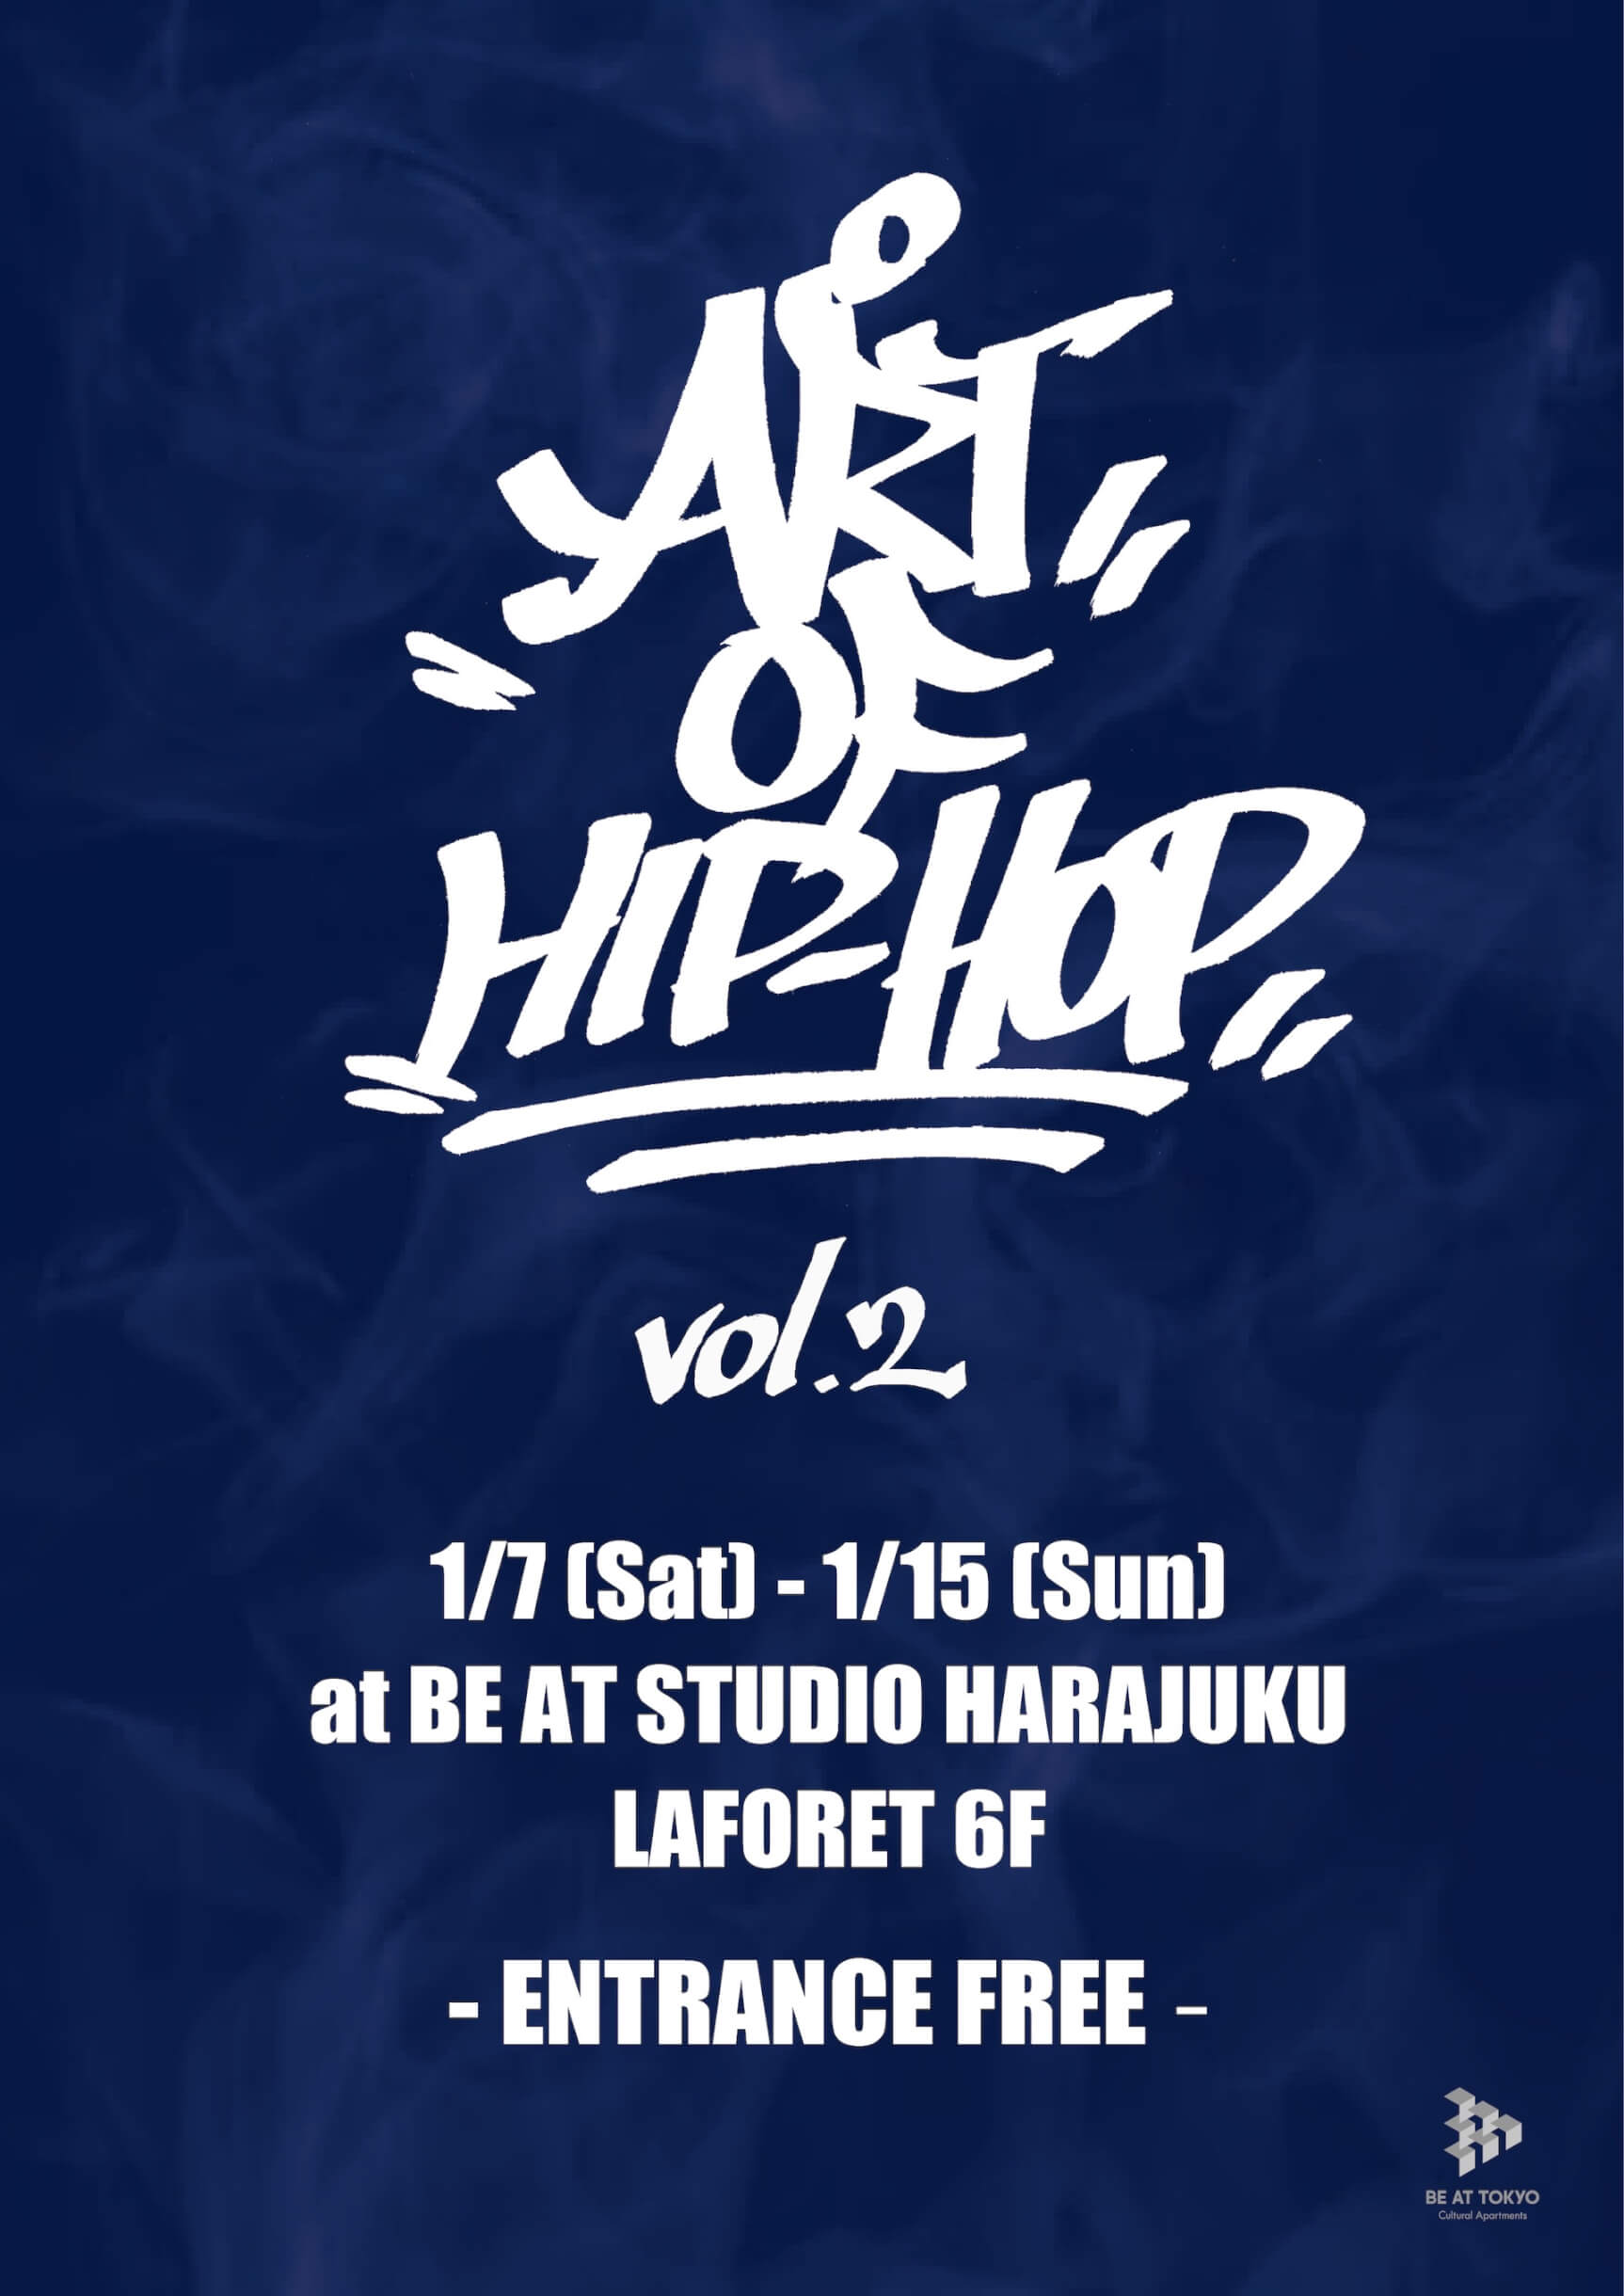 ART OF HIP HOP vol.2